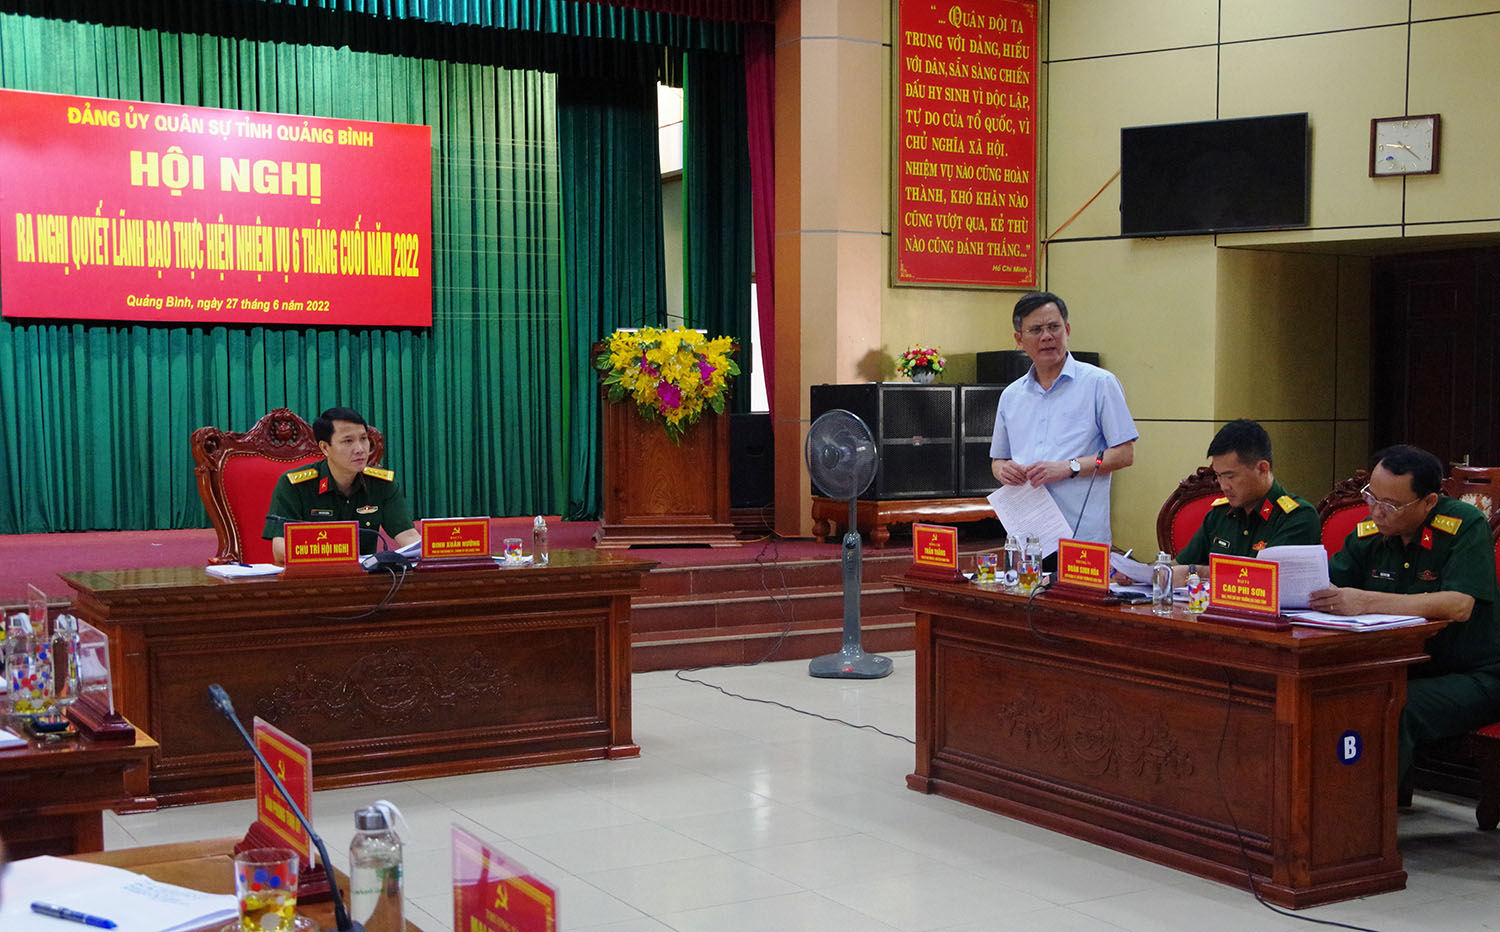 Đồng chí Trần Thắng, Phó Bí thư Tỉnh ủy, Chủ tịch UBND tỉnh phát biểu chỉ đạo